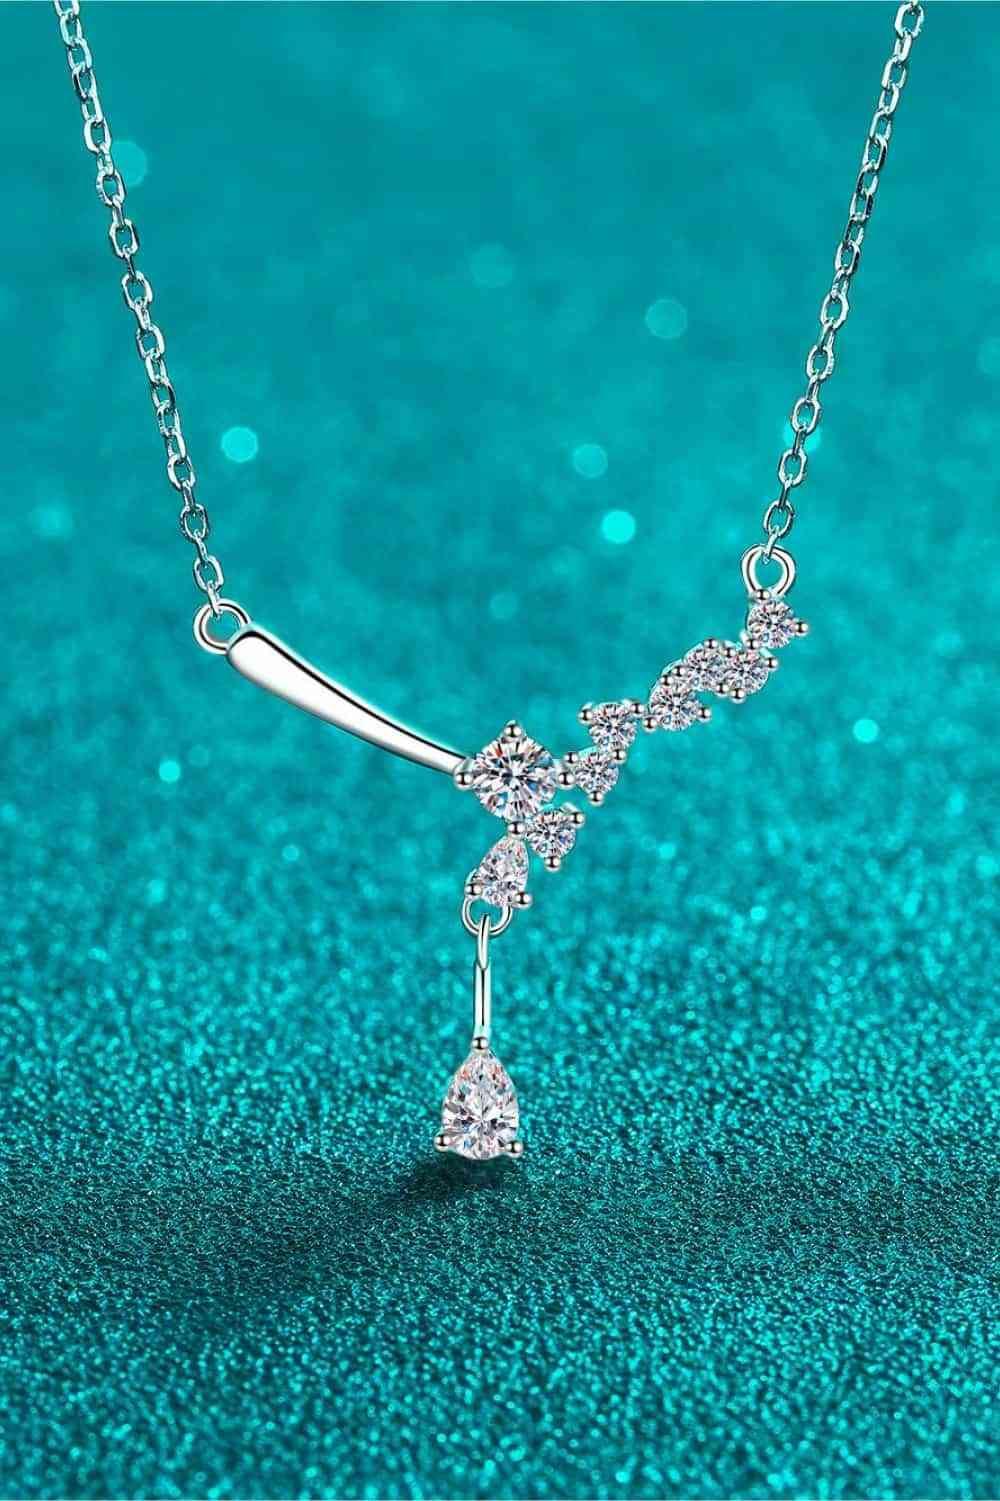 a diamond necklace on a blue background